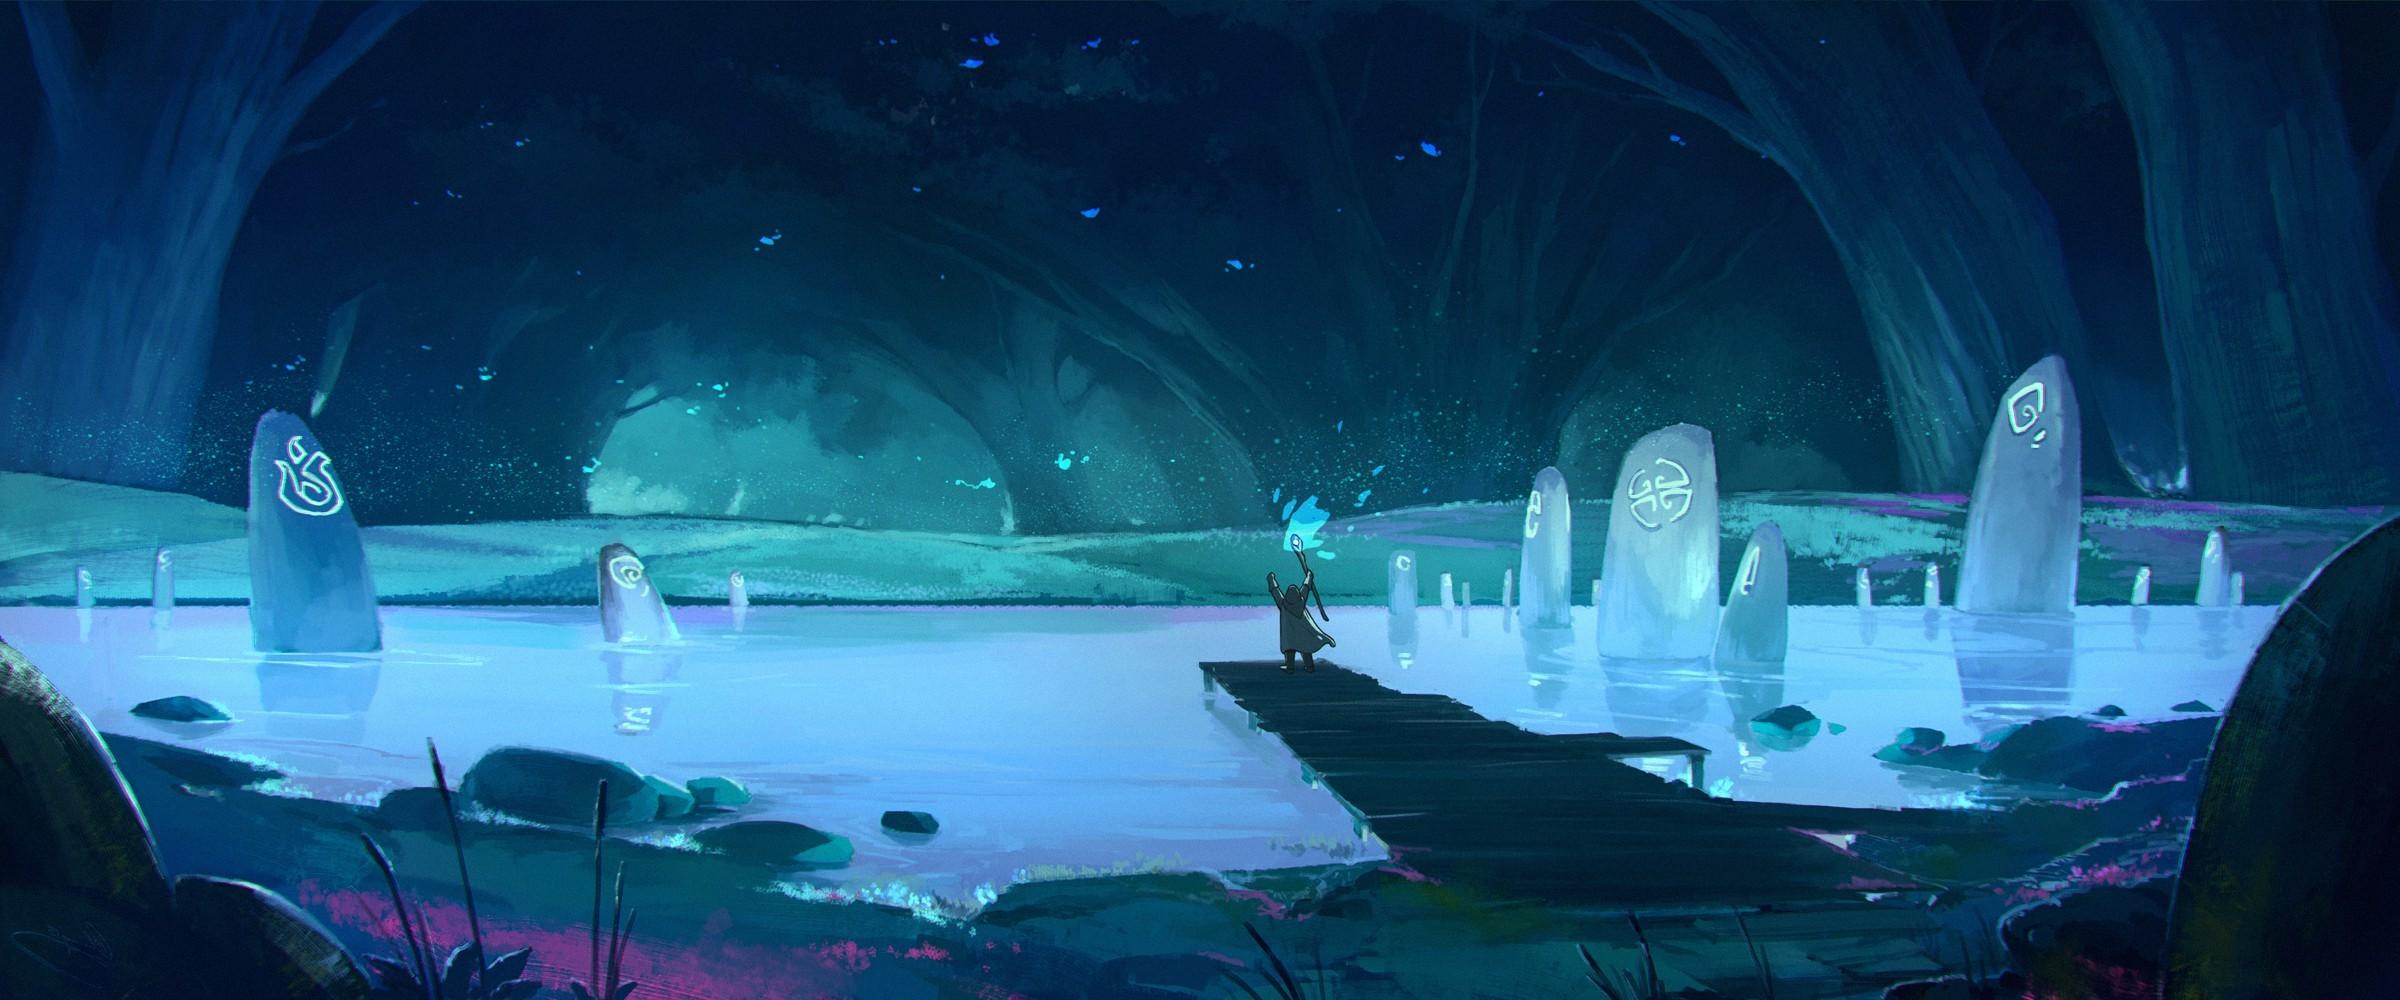 fantasy art blue pond cave magic wallpaper